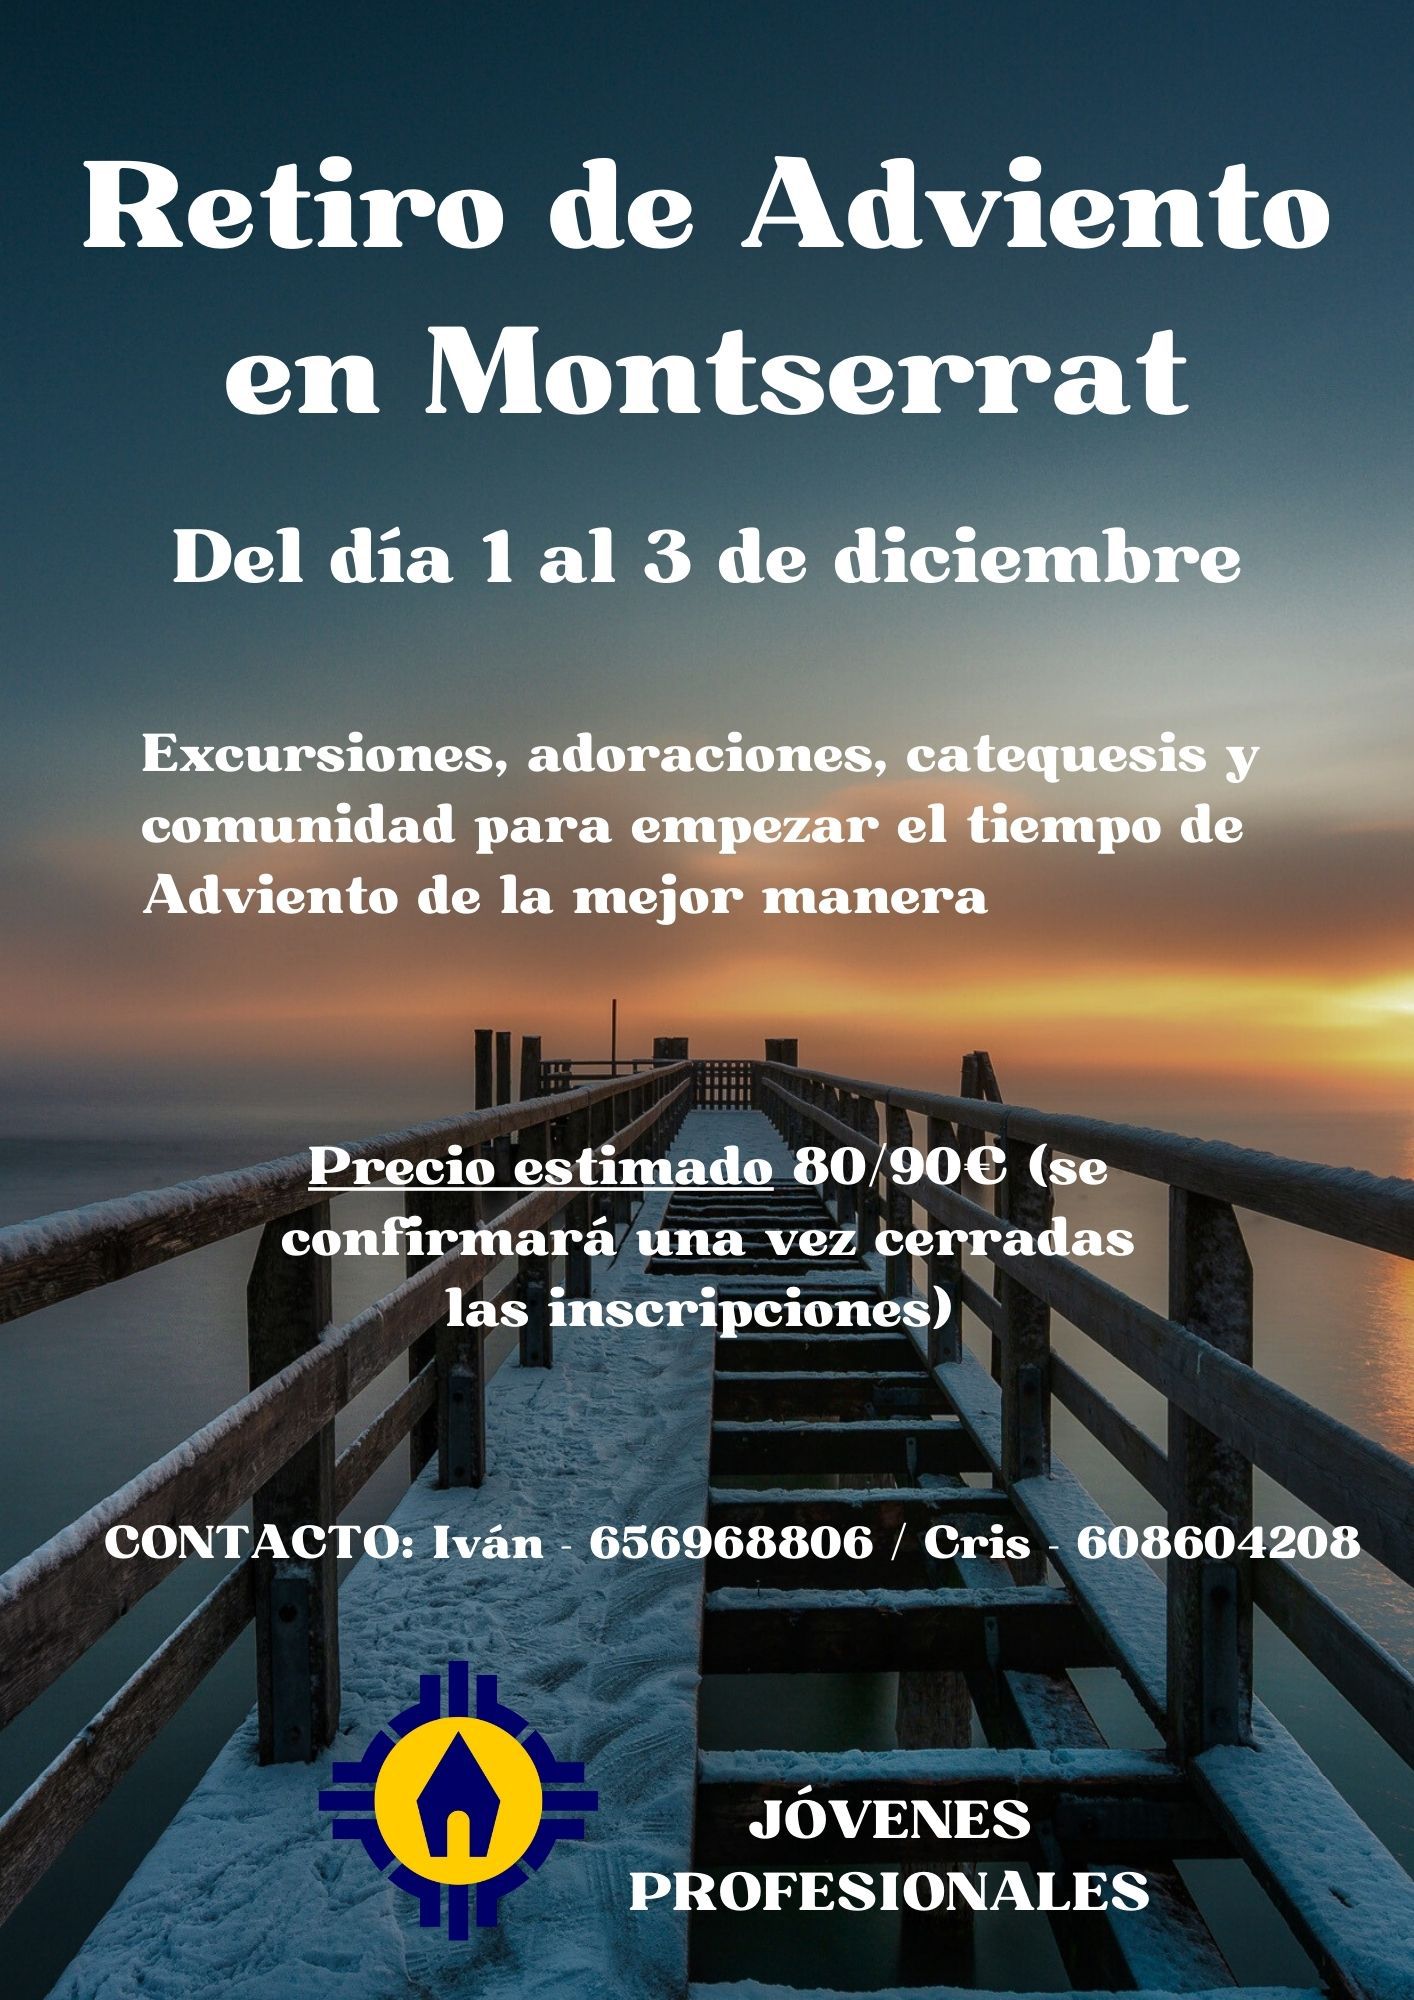 Retiro de Adviento para Jóvenes Profesionales en Montserrat